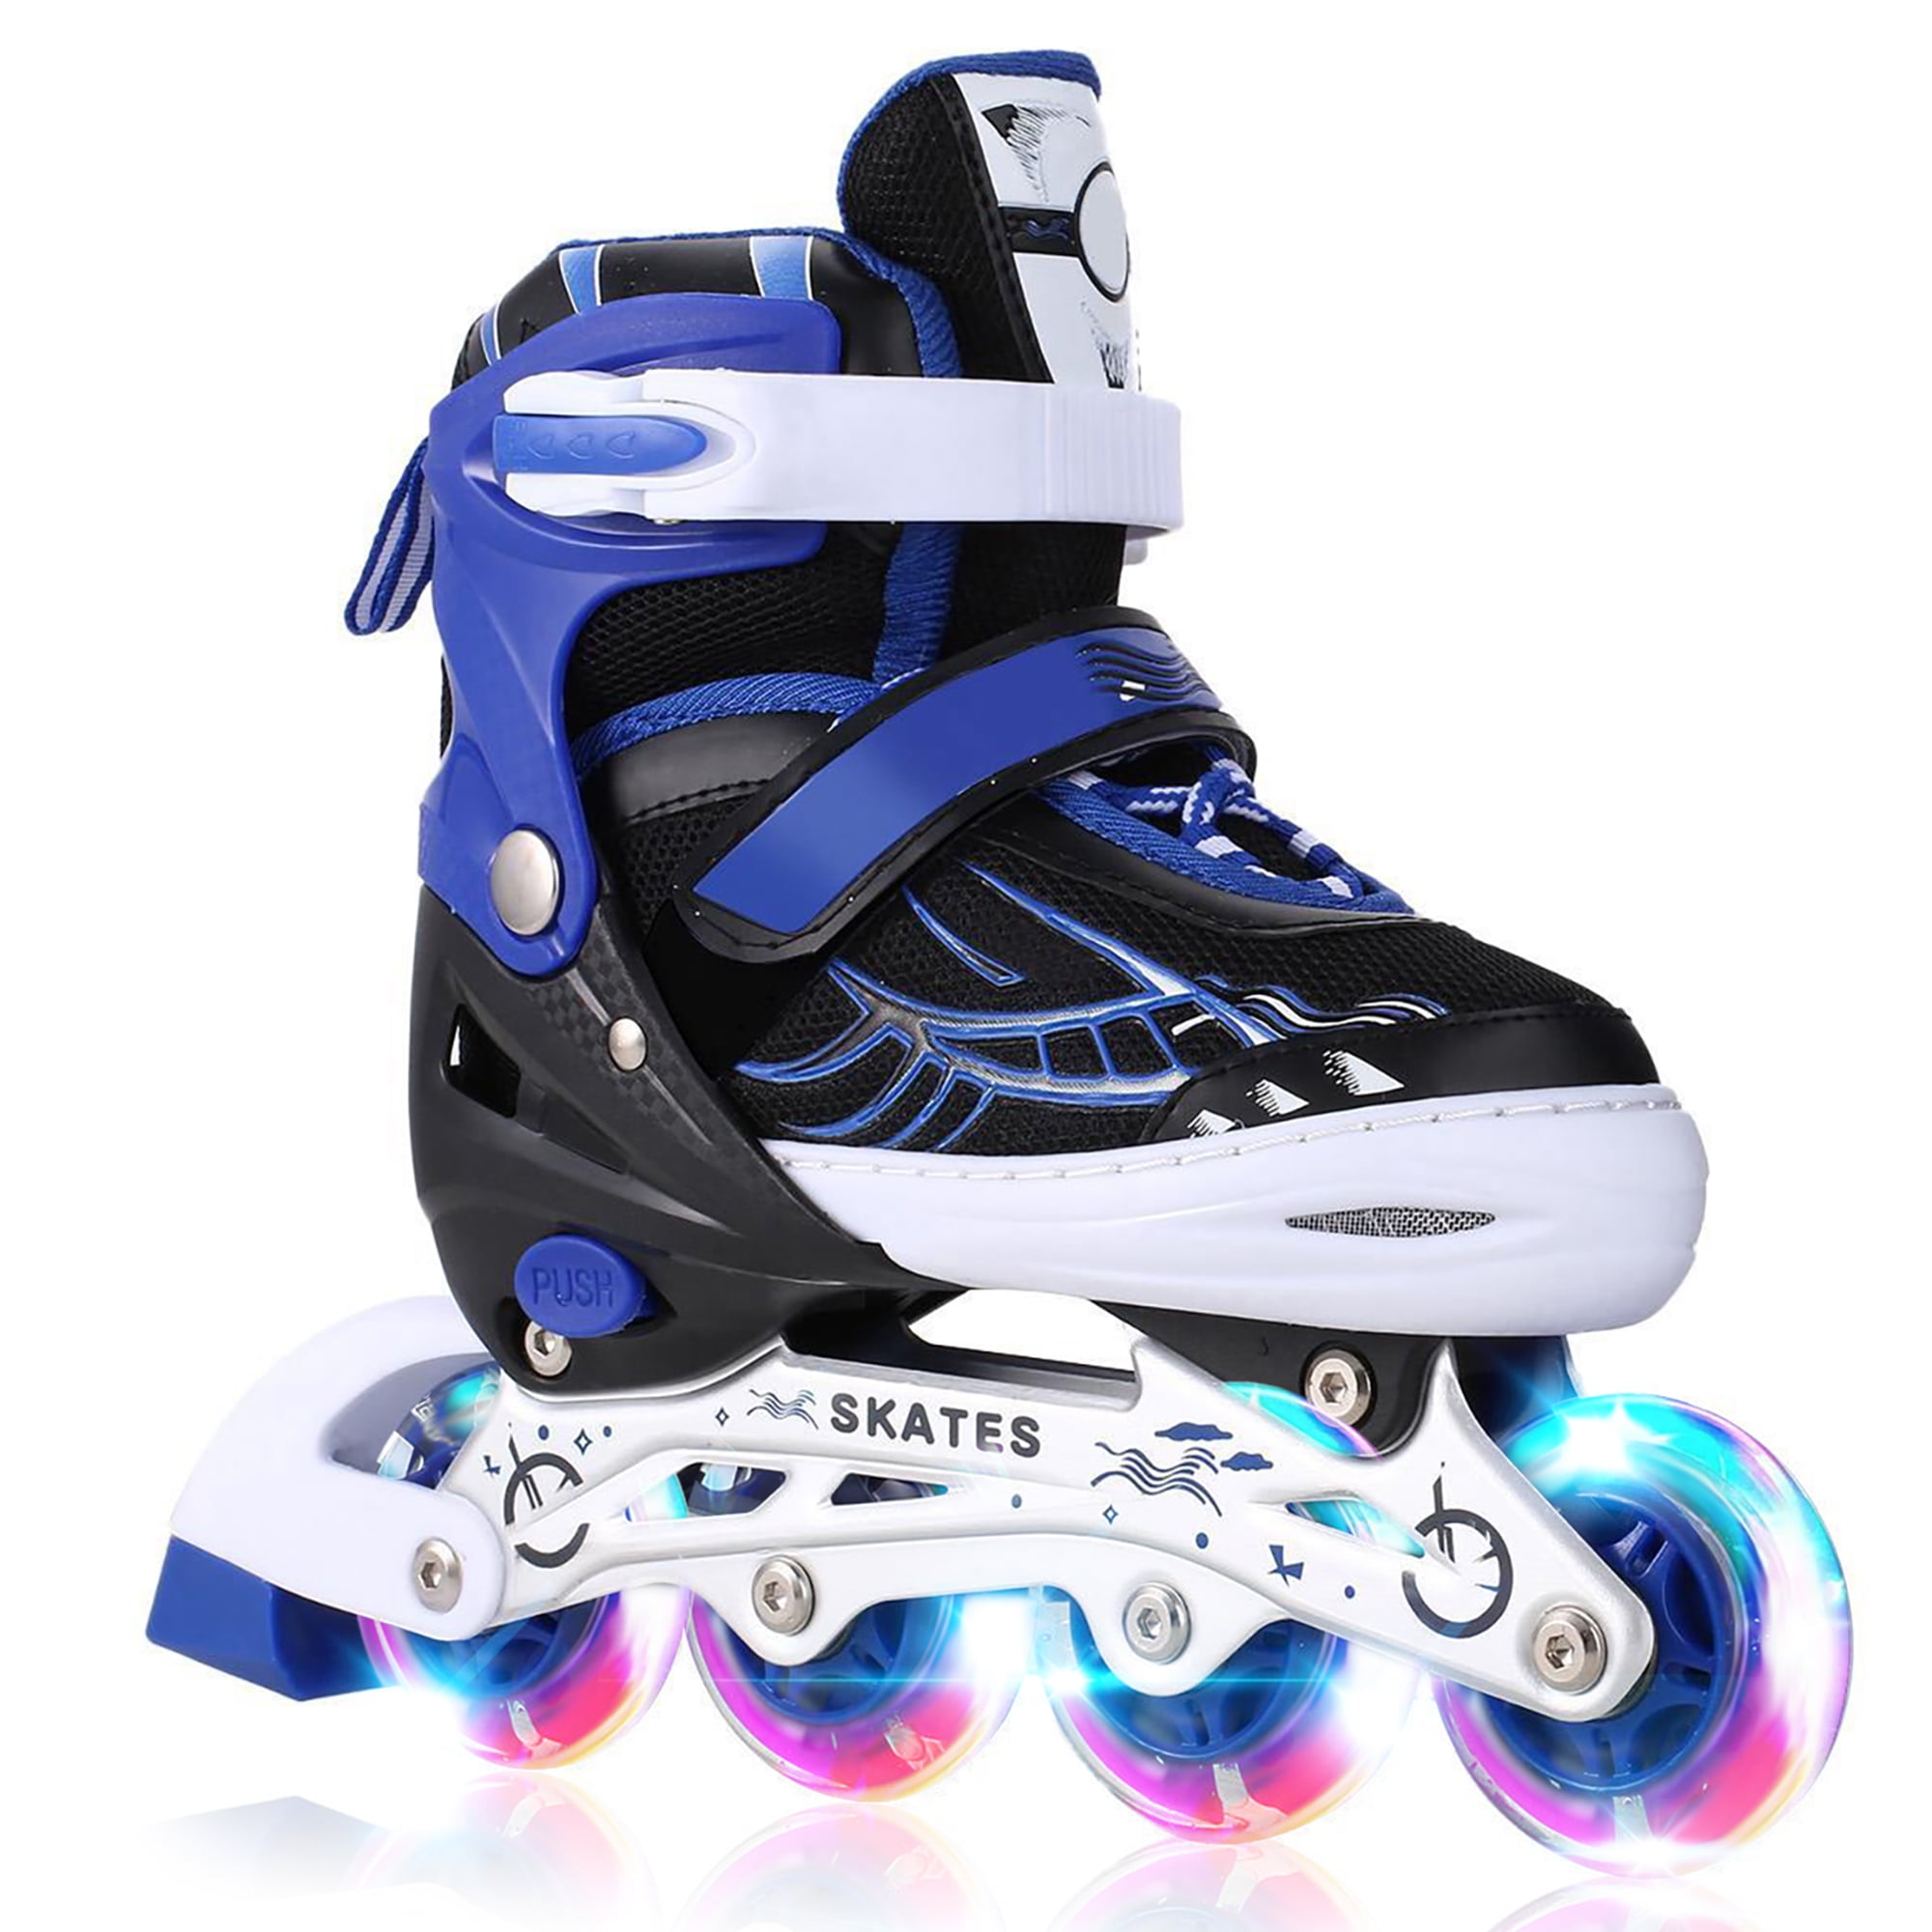 Details about  / 2021 Inline Skates for Men Women Size 7 8 9 10 Adjustable Roller Blades Gift/&